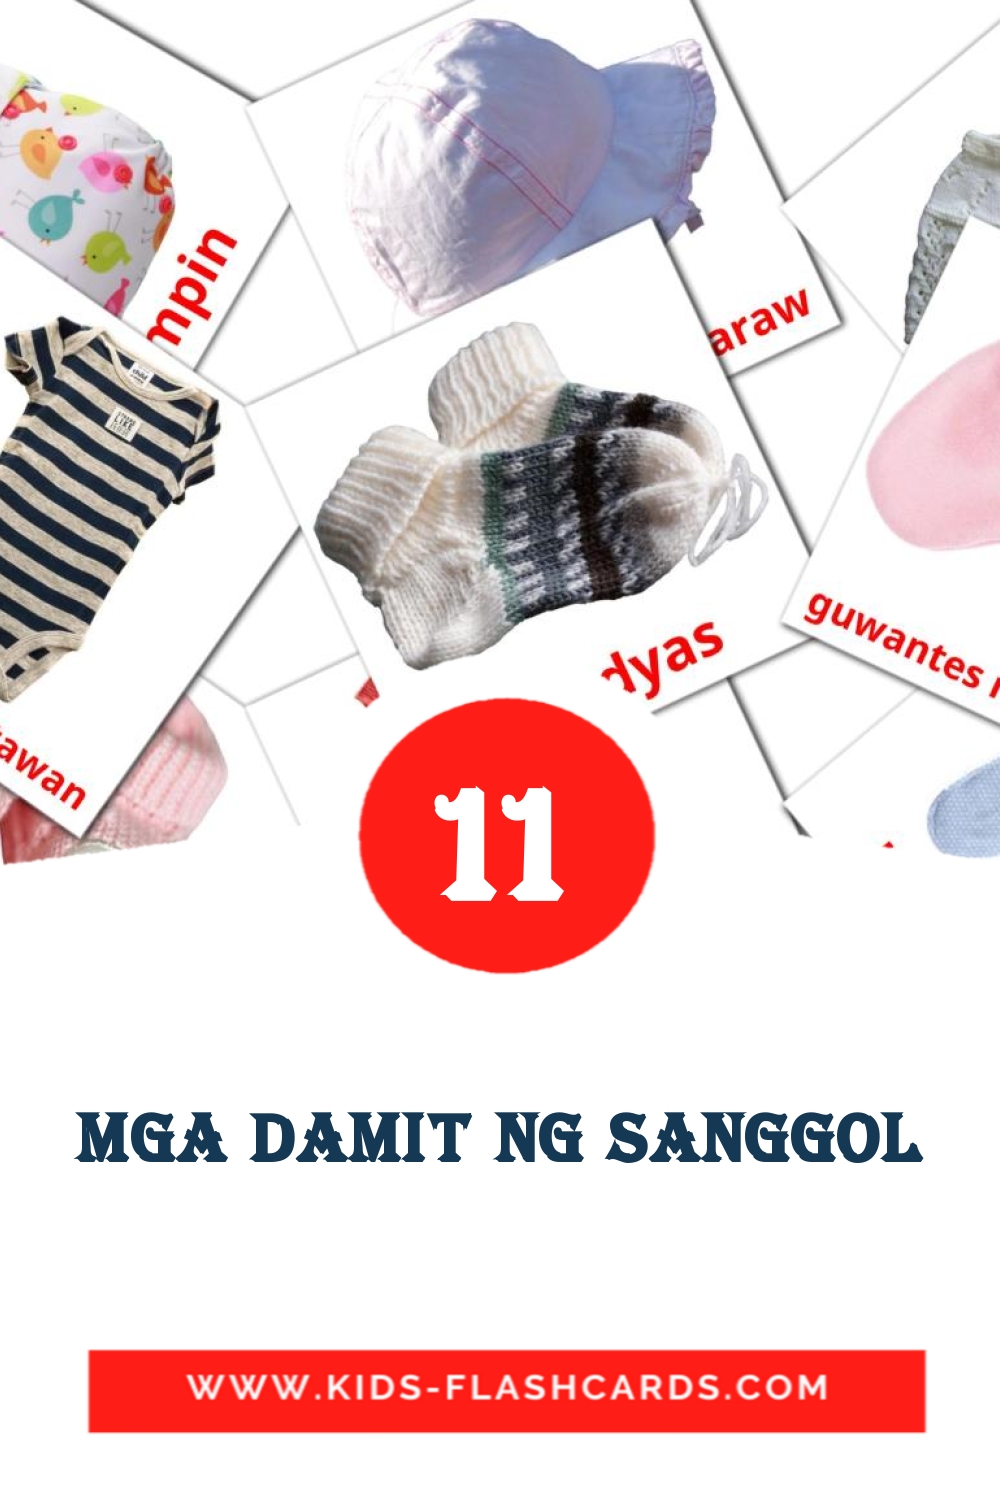 Mga damit ng sanggol на филиппинском для Детского Сада (11 карточек)